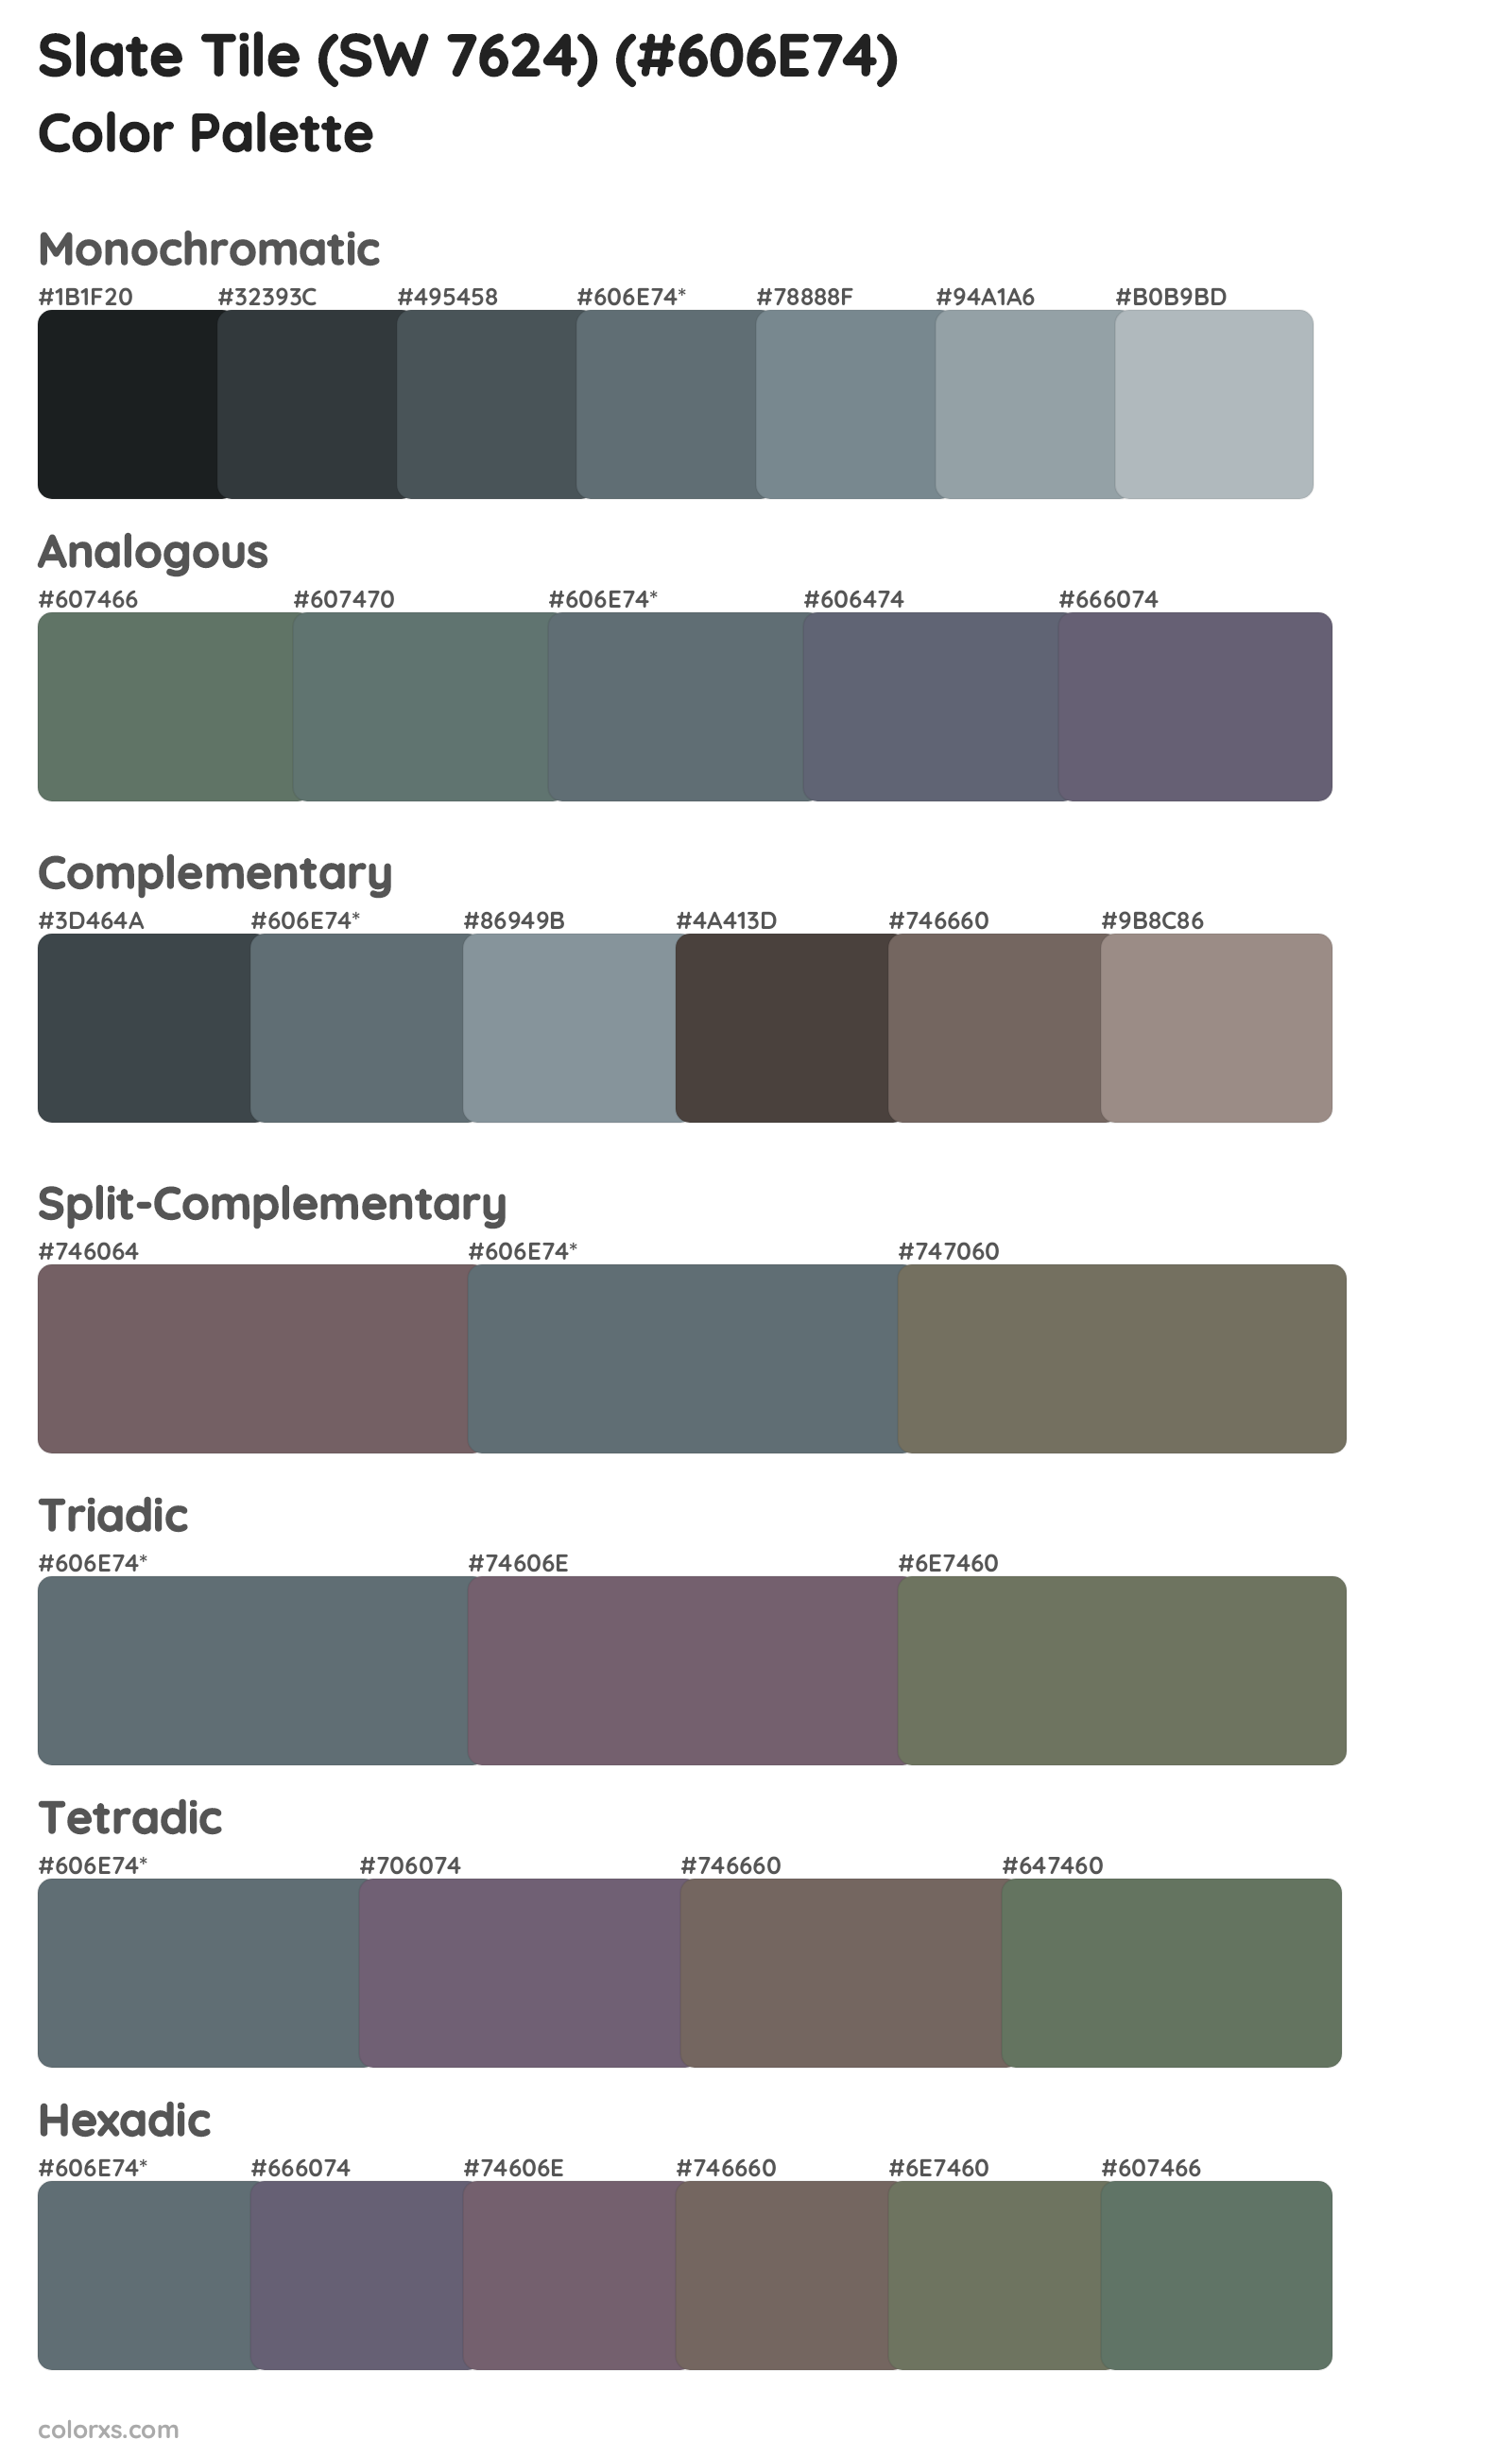 Slate Tile (SW 7624) Color Scheme Palettes